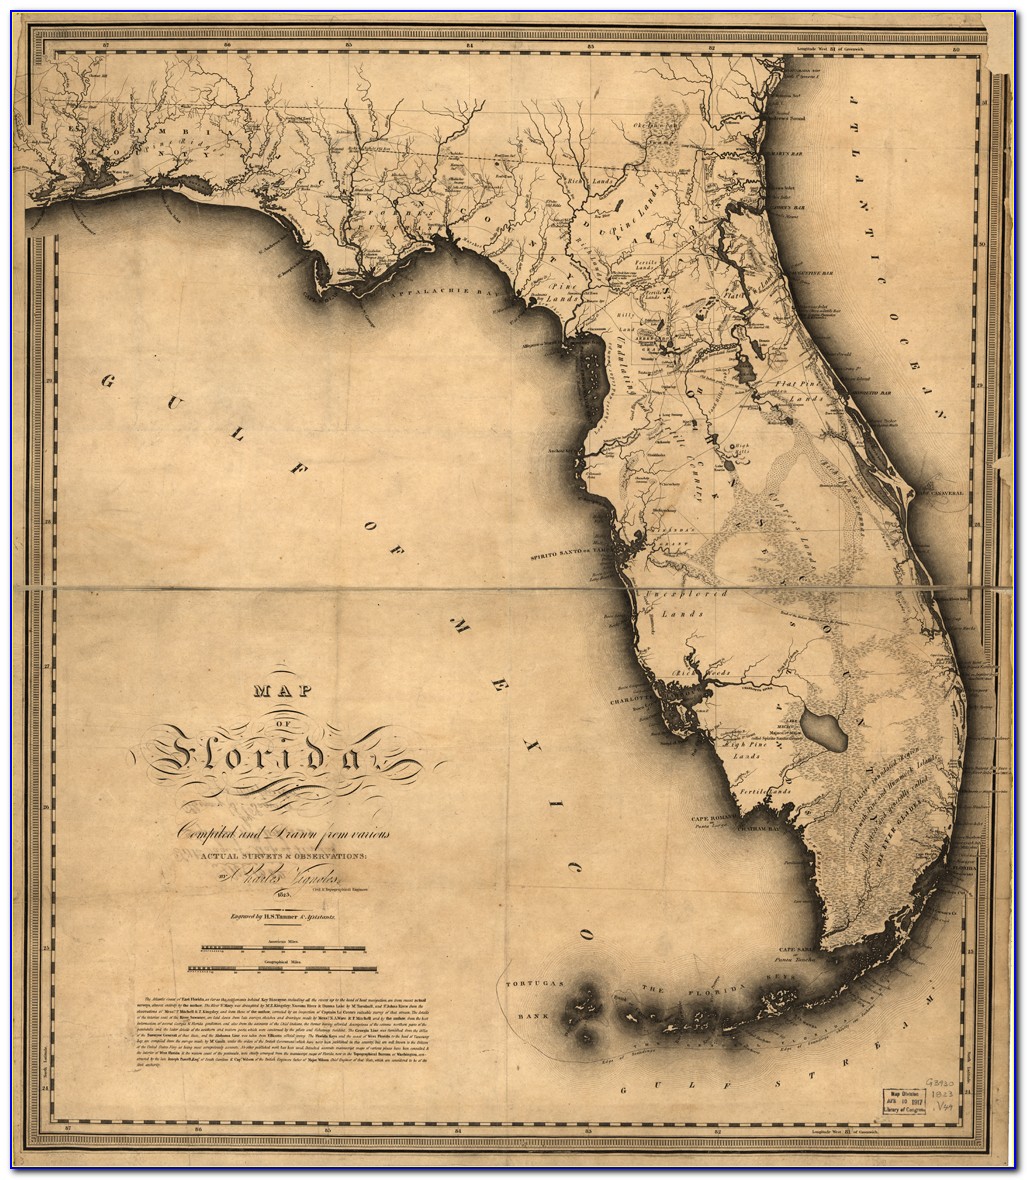 Antique Florida Map